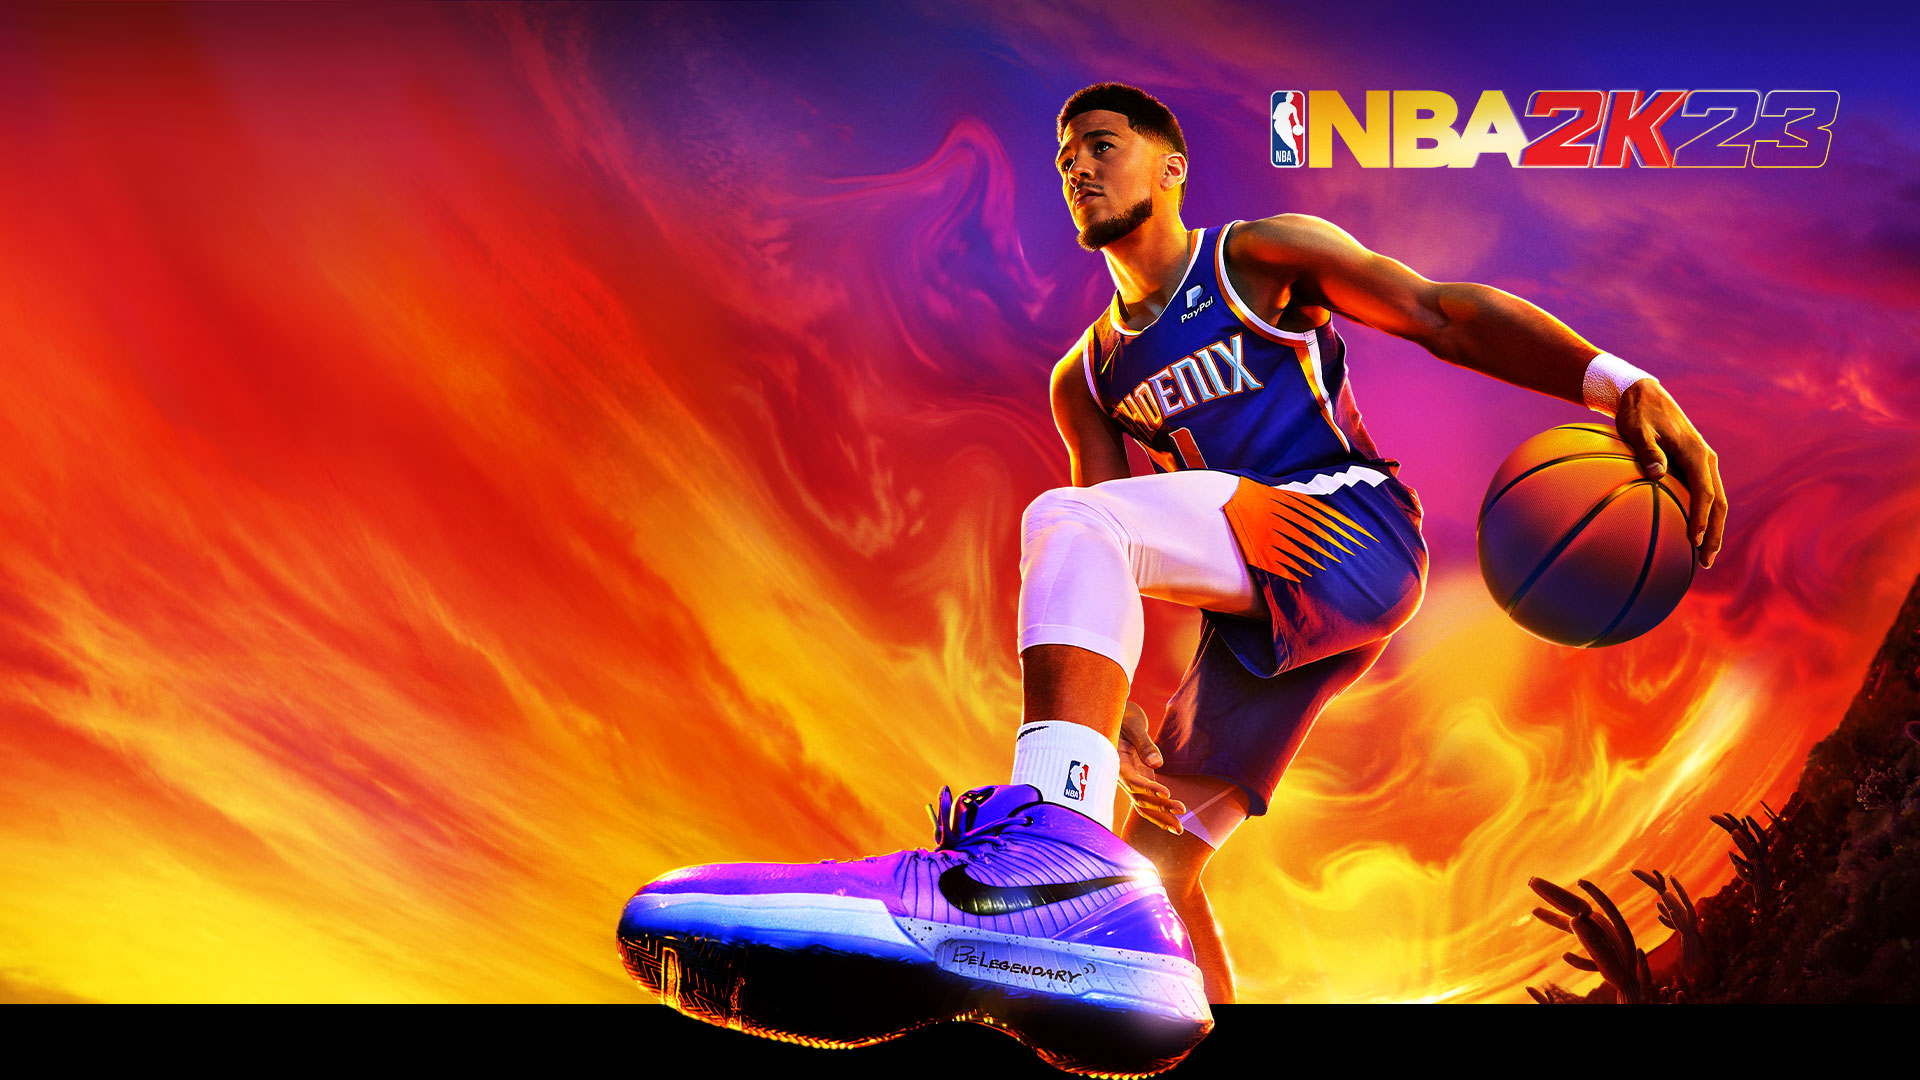 NBA 2K23, Devin Booker, nummer 1 for Phoenix Suns, dribler en basketball under en farverig ørkenhimmel.